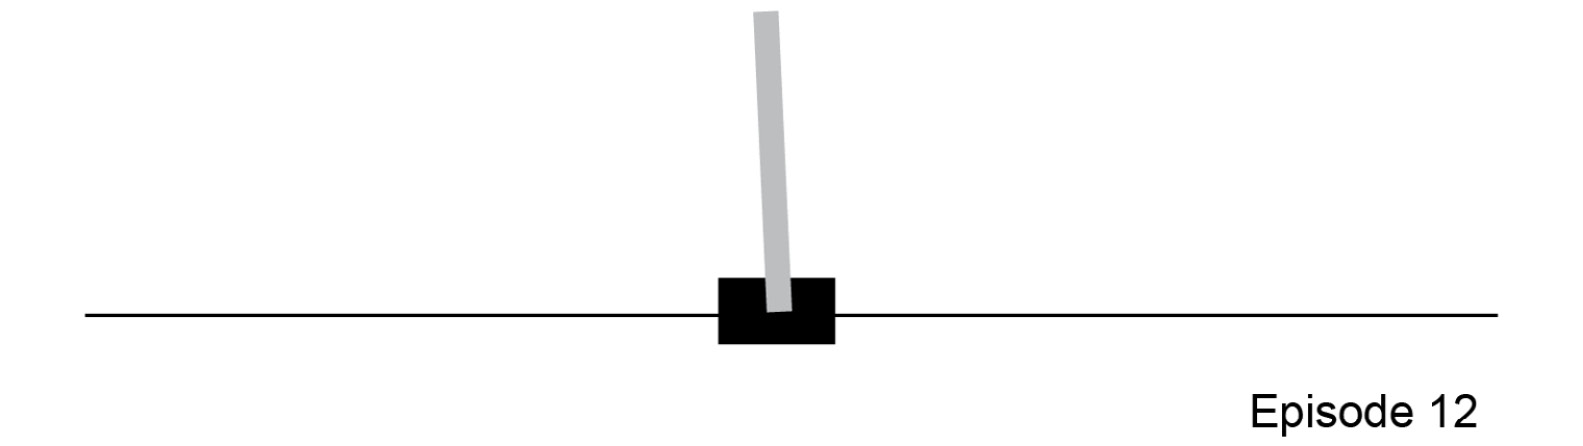 Figure 4.11: CartPole control problem
